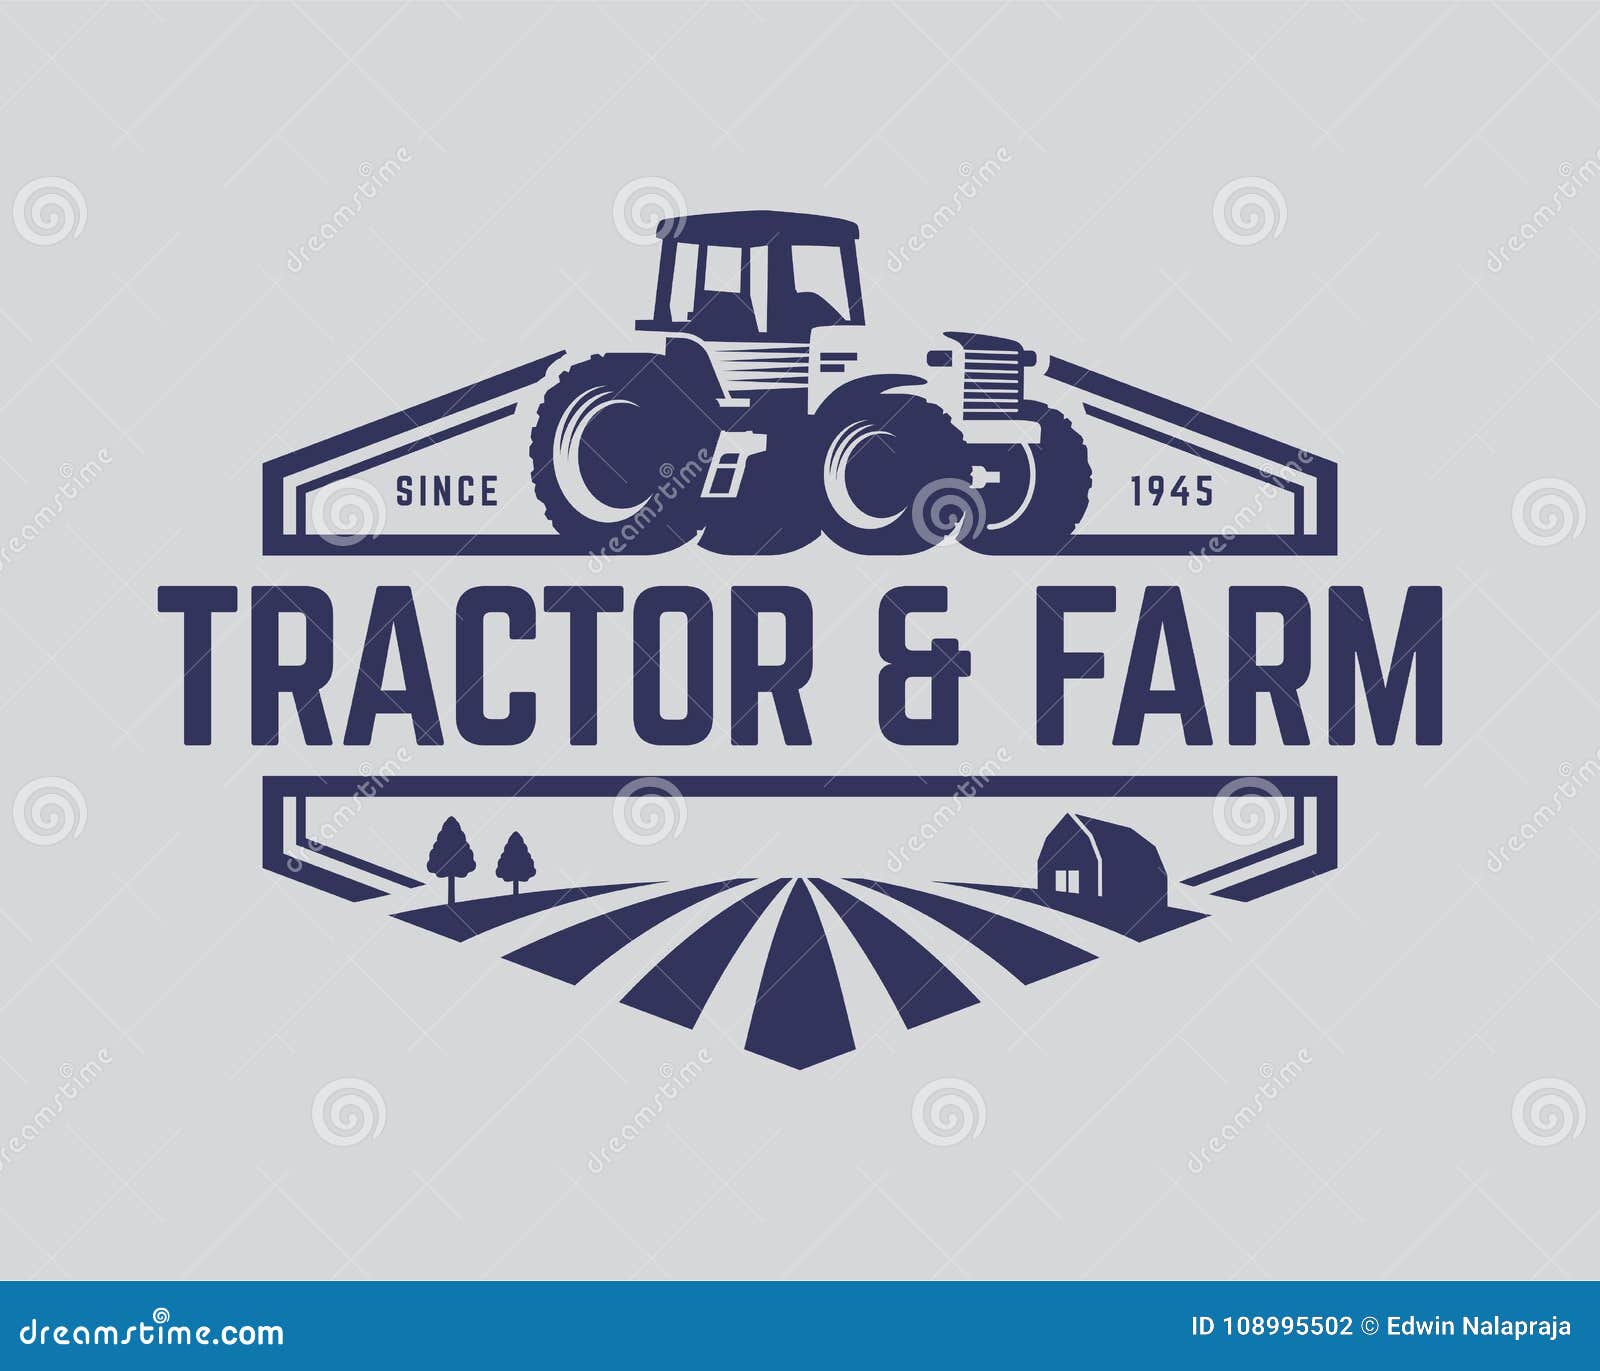 tractor logo template, farm logo 